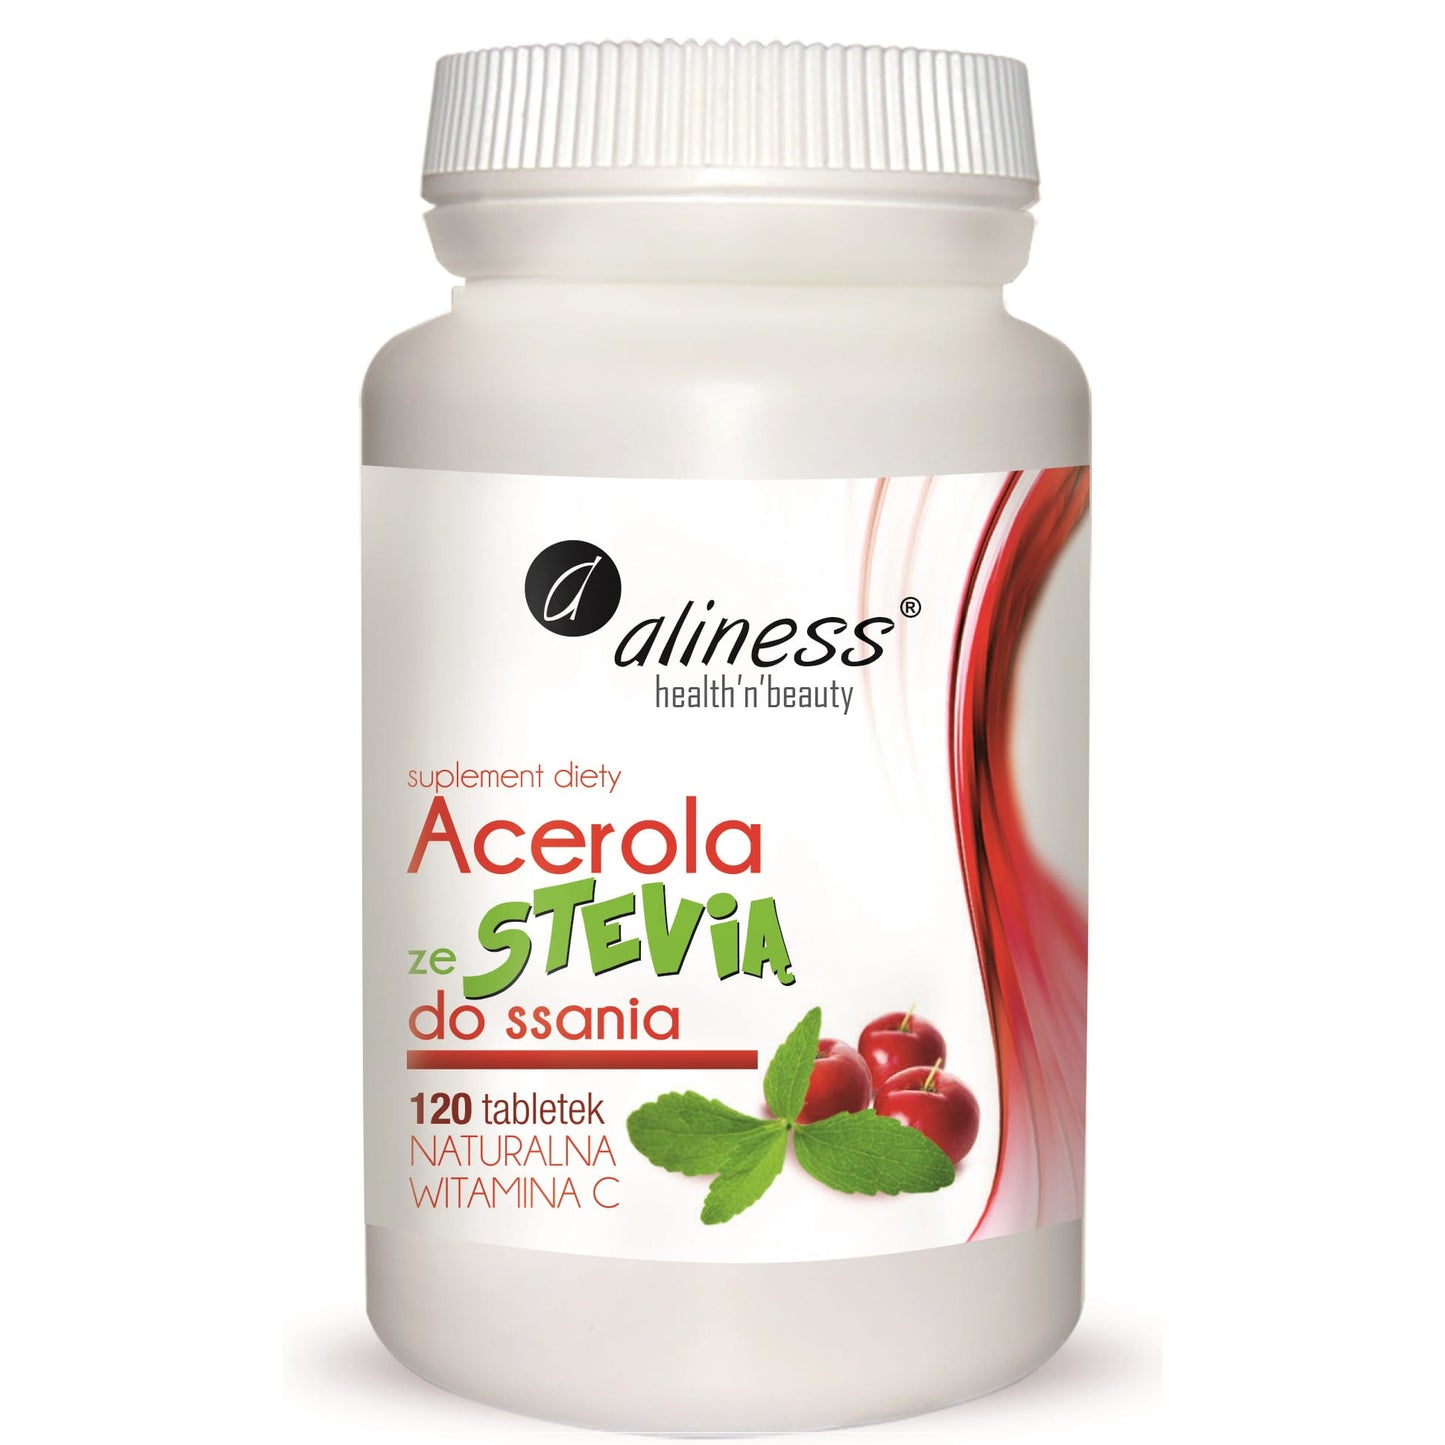 Aliness Acerola ze Stevią do ssania dla dzieci. Naturalna witamina C 125mg, 120 tabletek